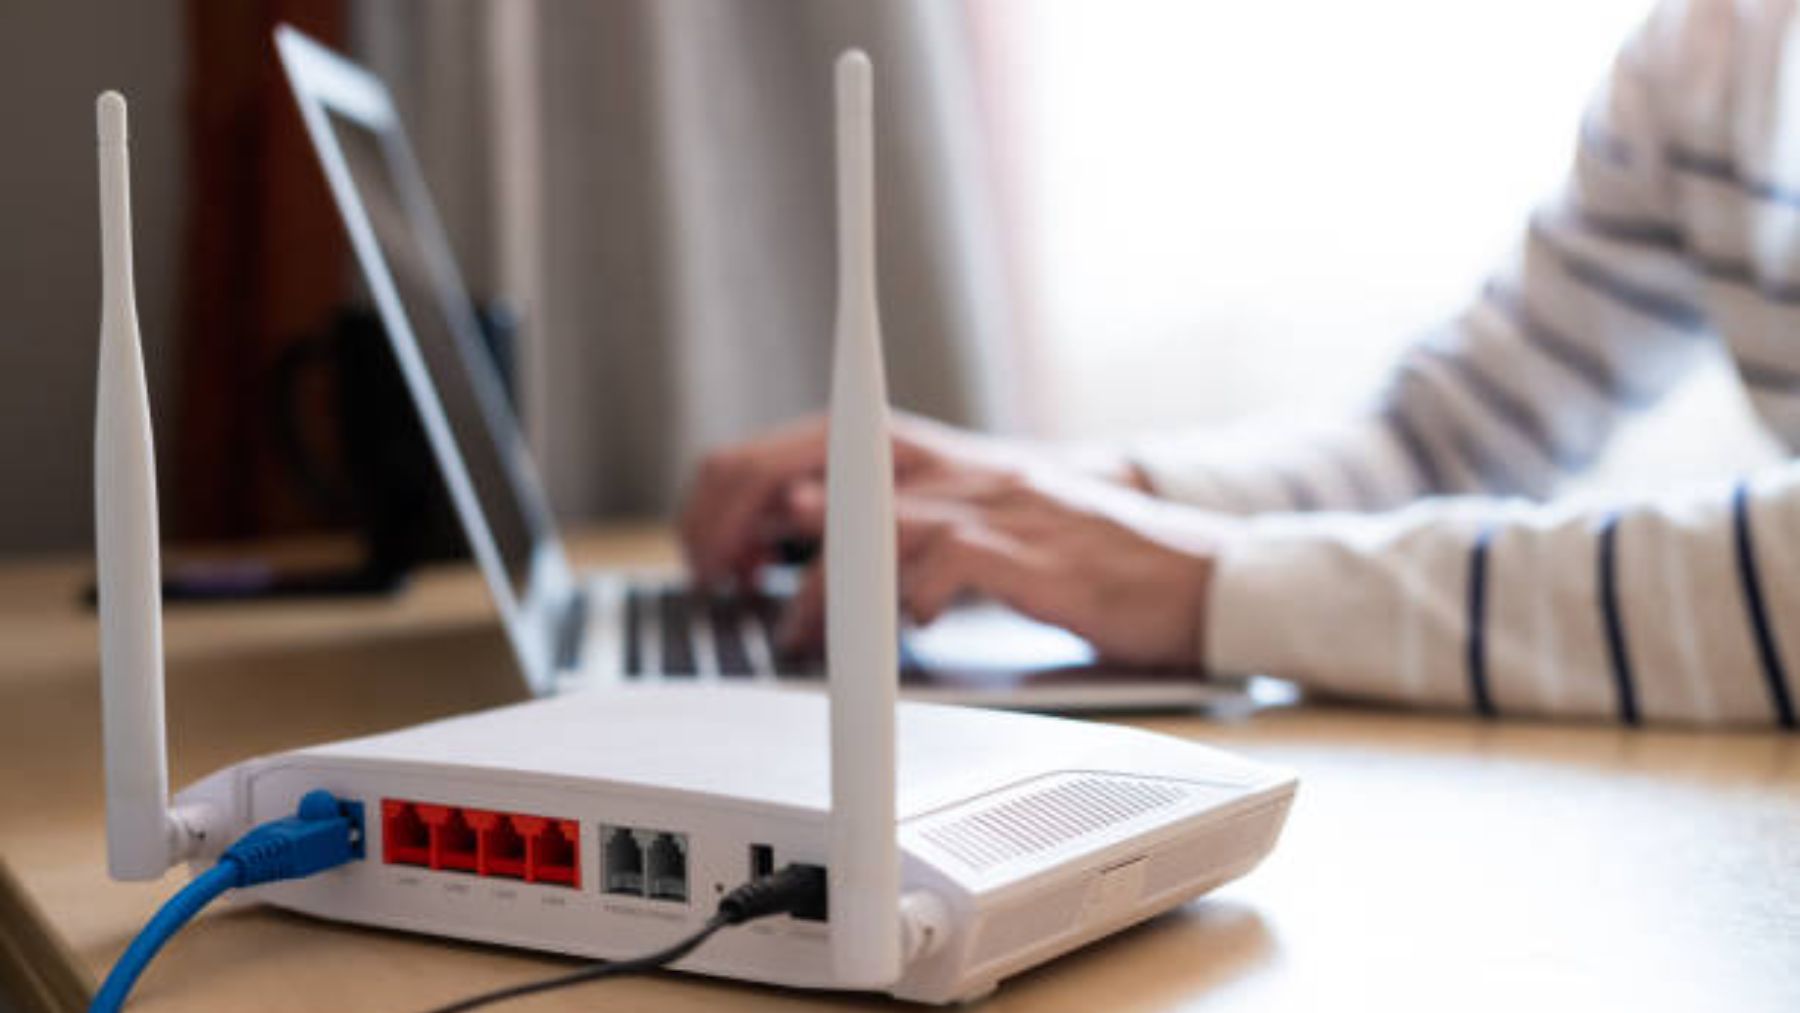 Cómo colocar tu router y sus antenas para maximizar el alcance del WiFi